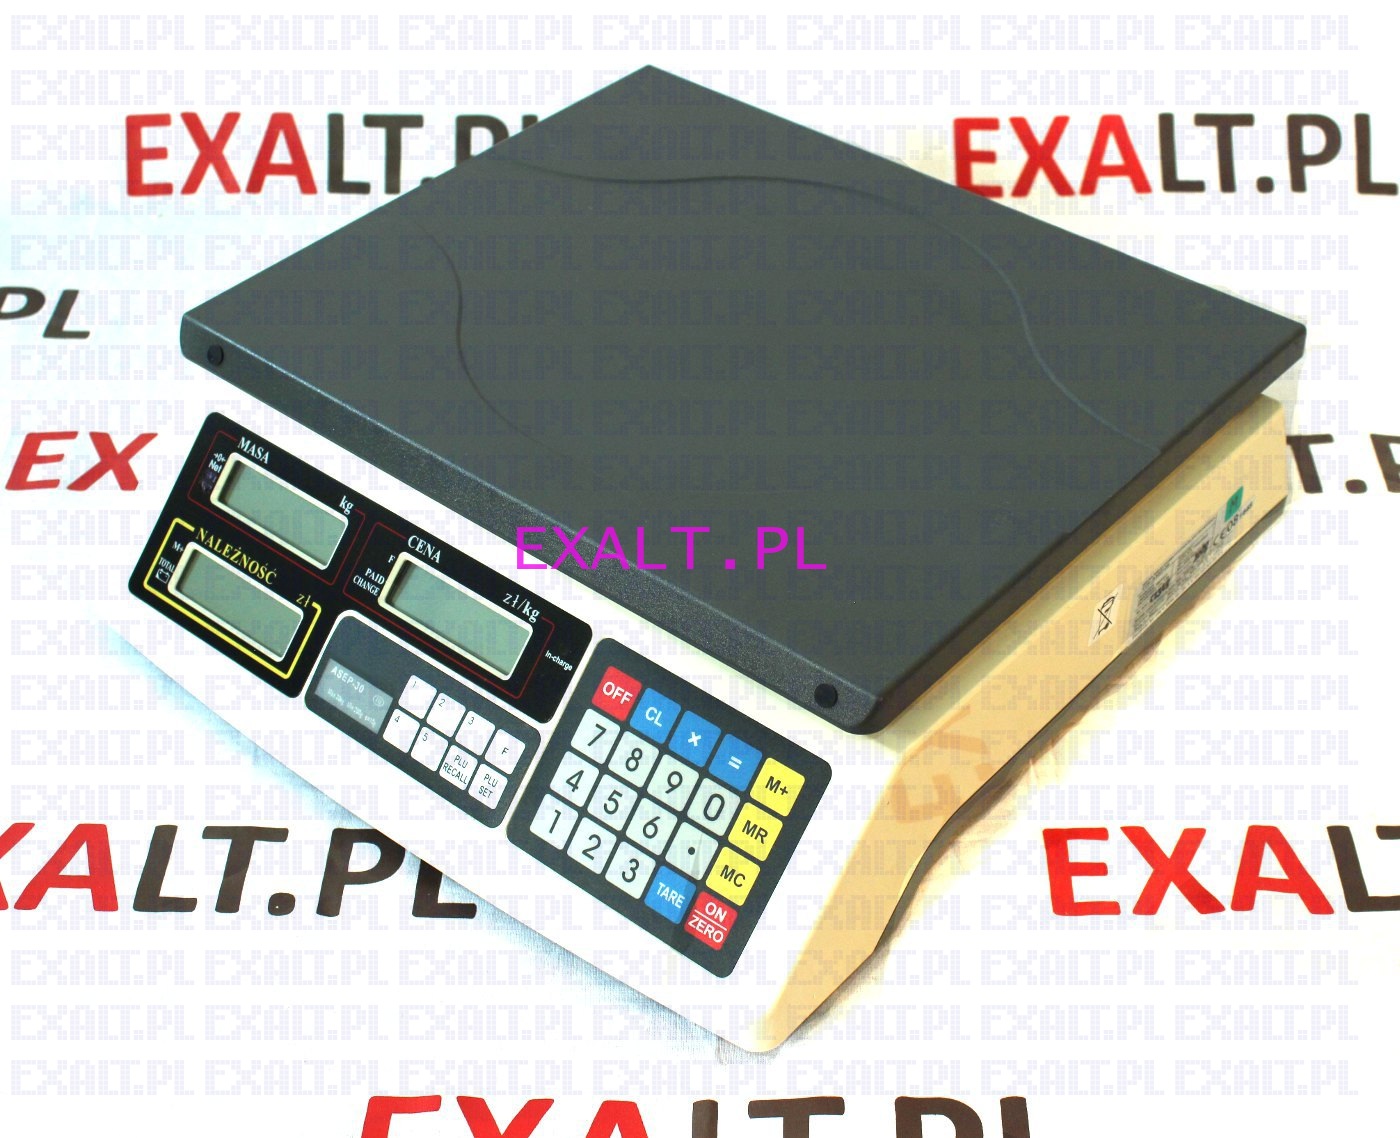 Waga sklepowa kalkulacyjna ASEP-30, zakres 30kg, dokadno 10g, z zasilaniem akumulatorowym, z legalizacj w cenie